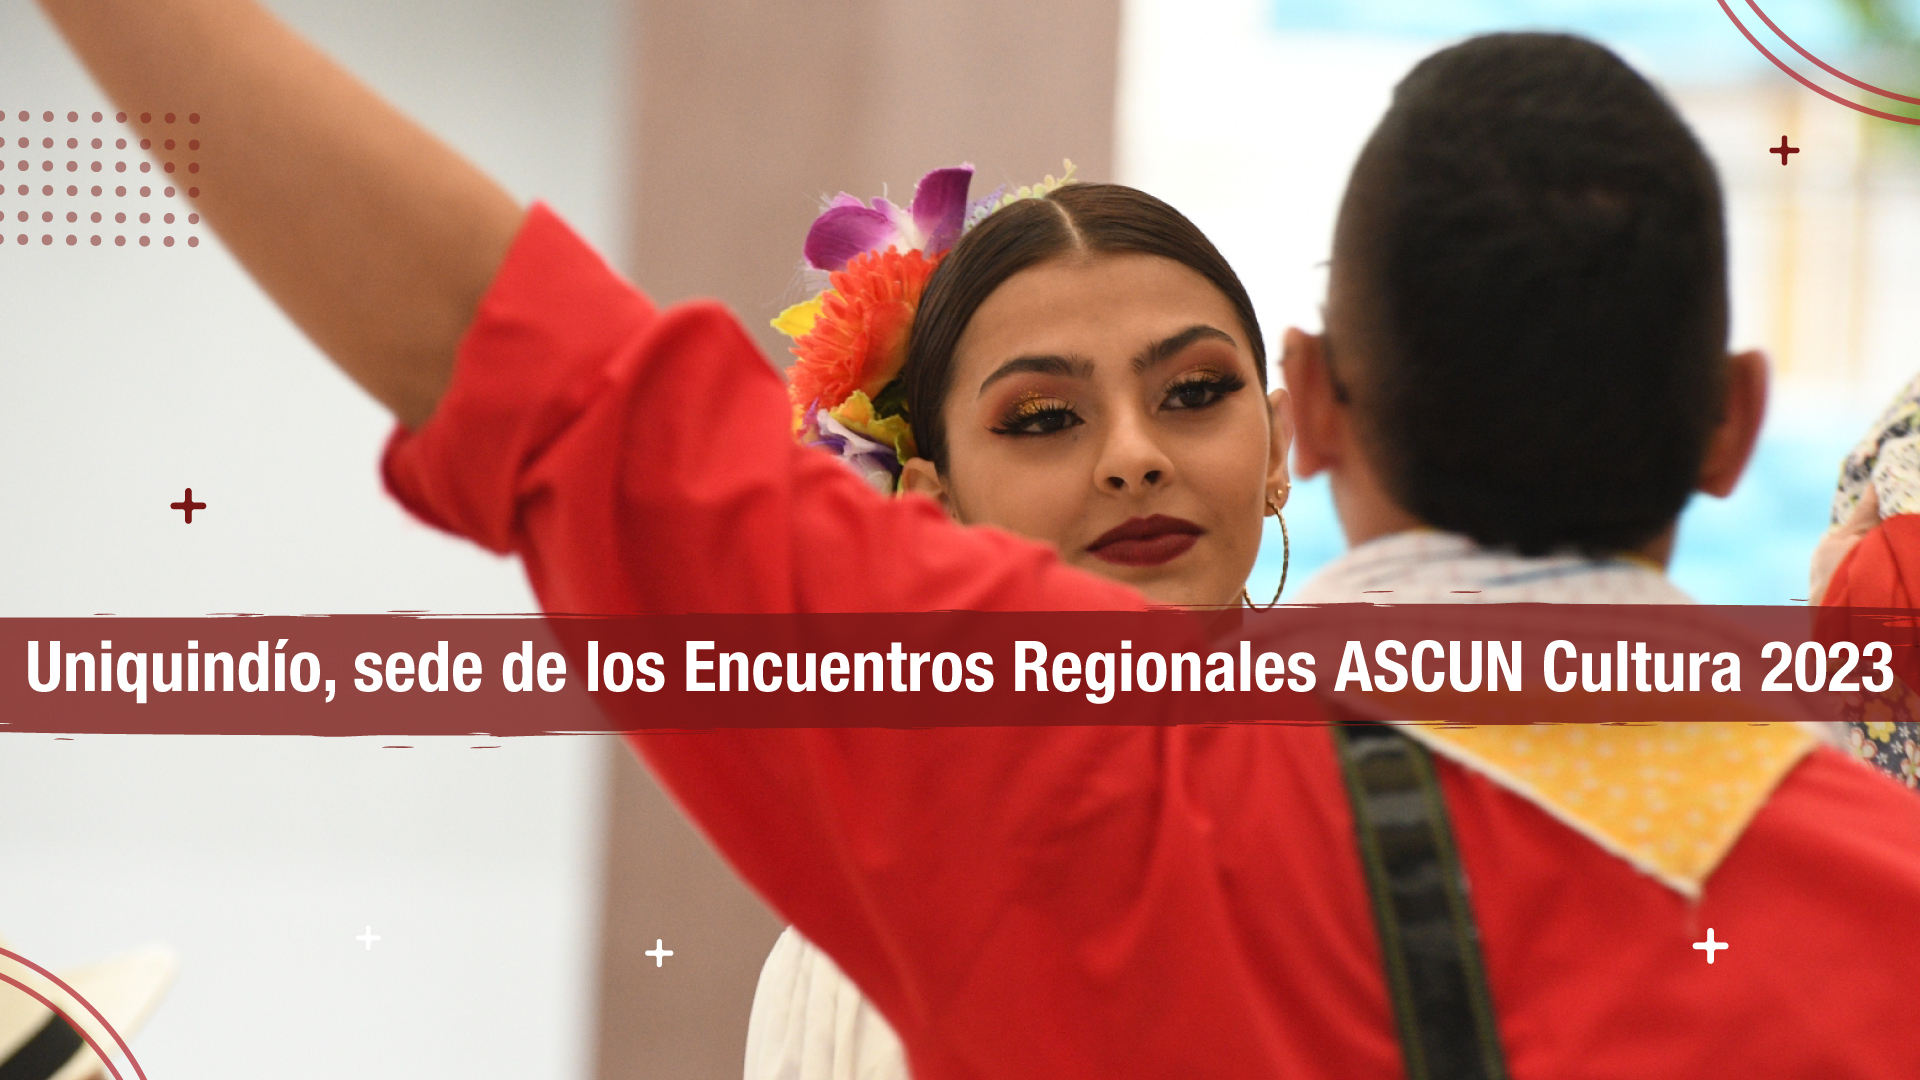 Uniquindío, sede de los Encuentros Regionales ASCUN Cultura 2023